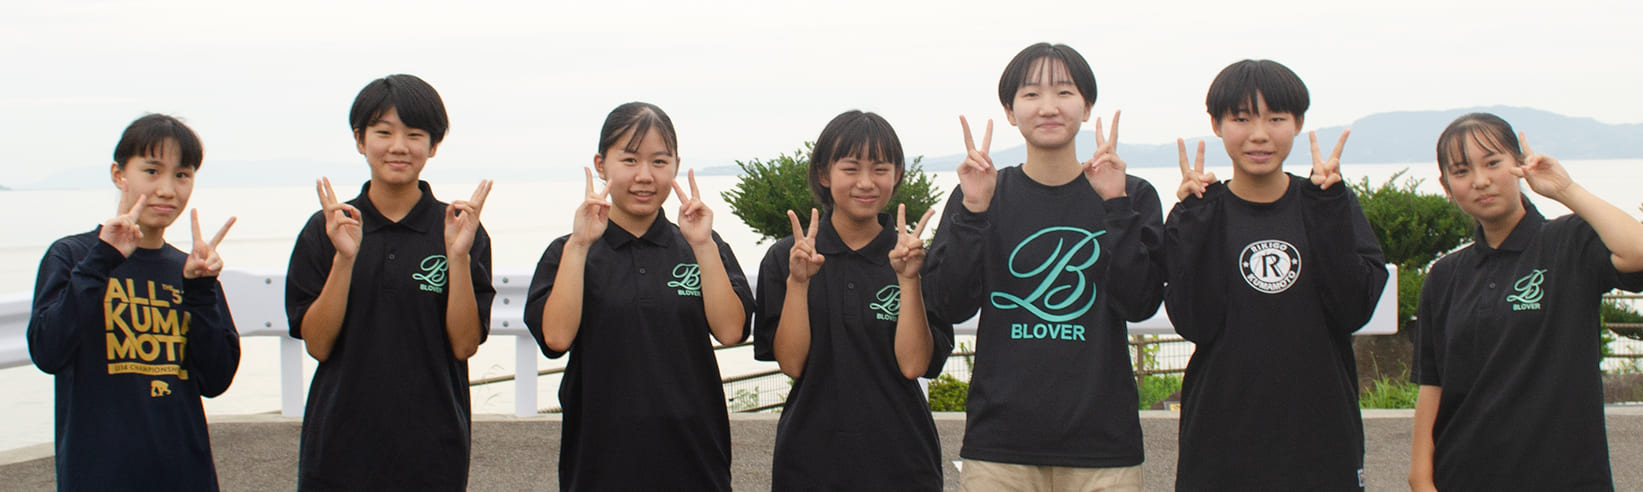 熊本の女子バスケットクラブチームBLOVERの写真